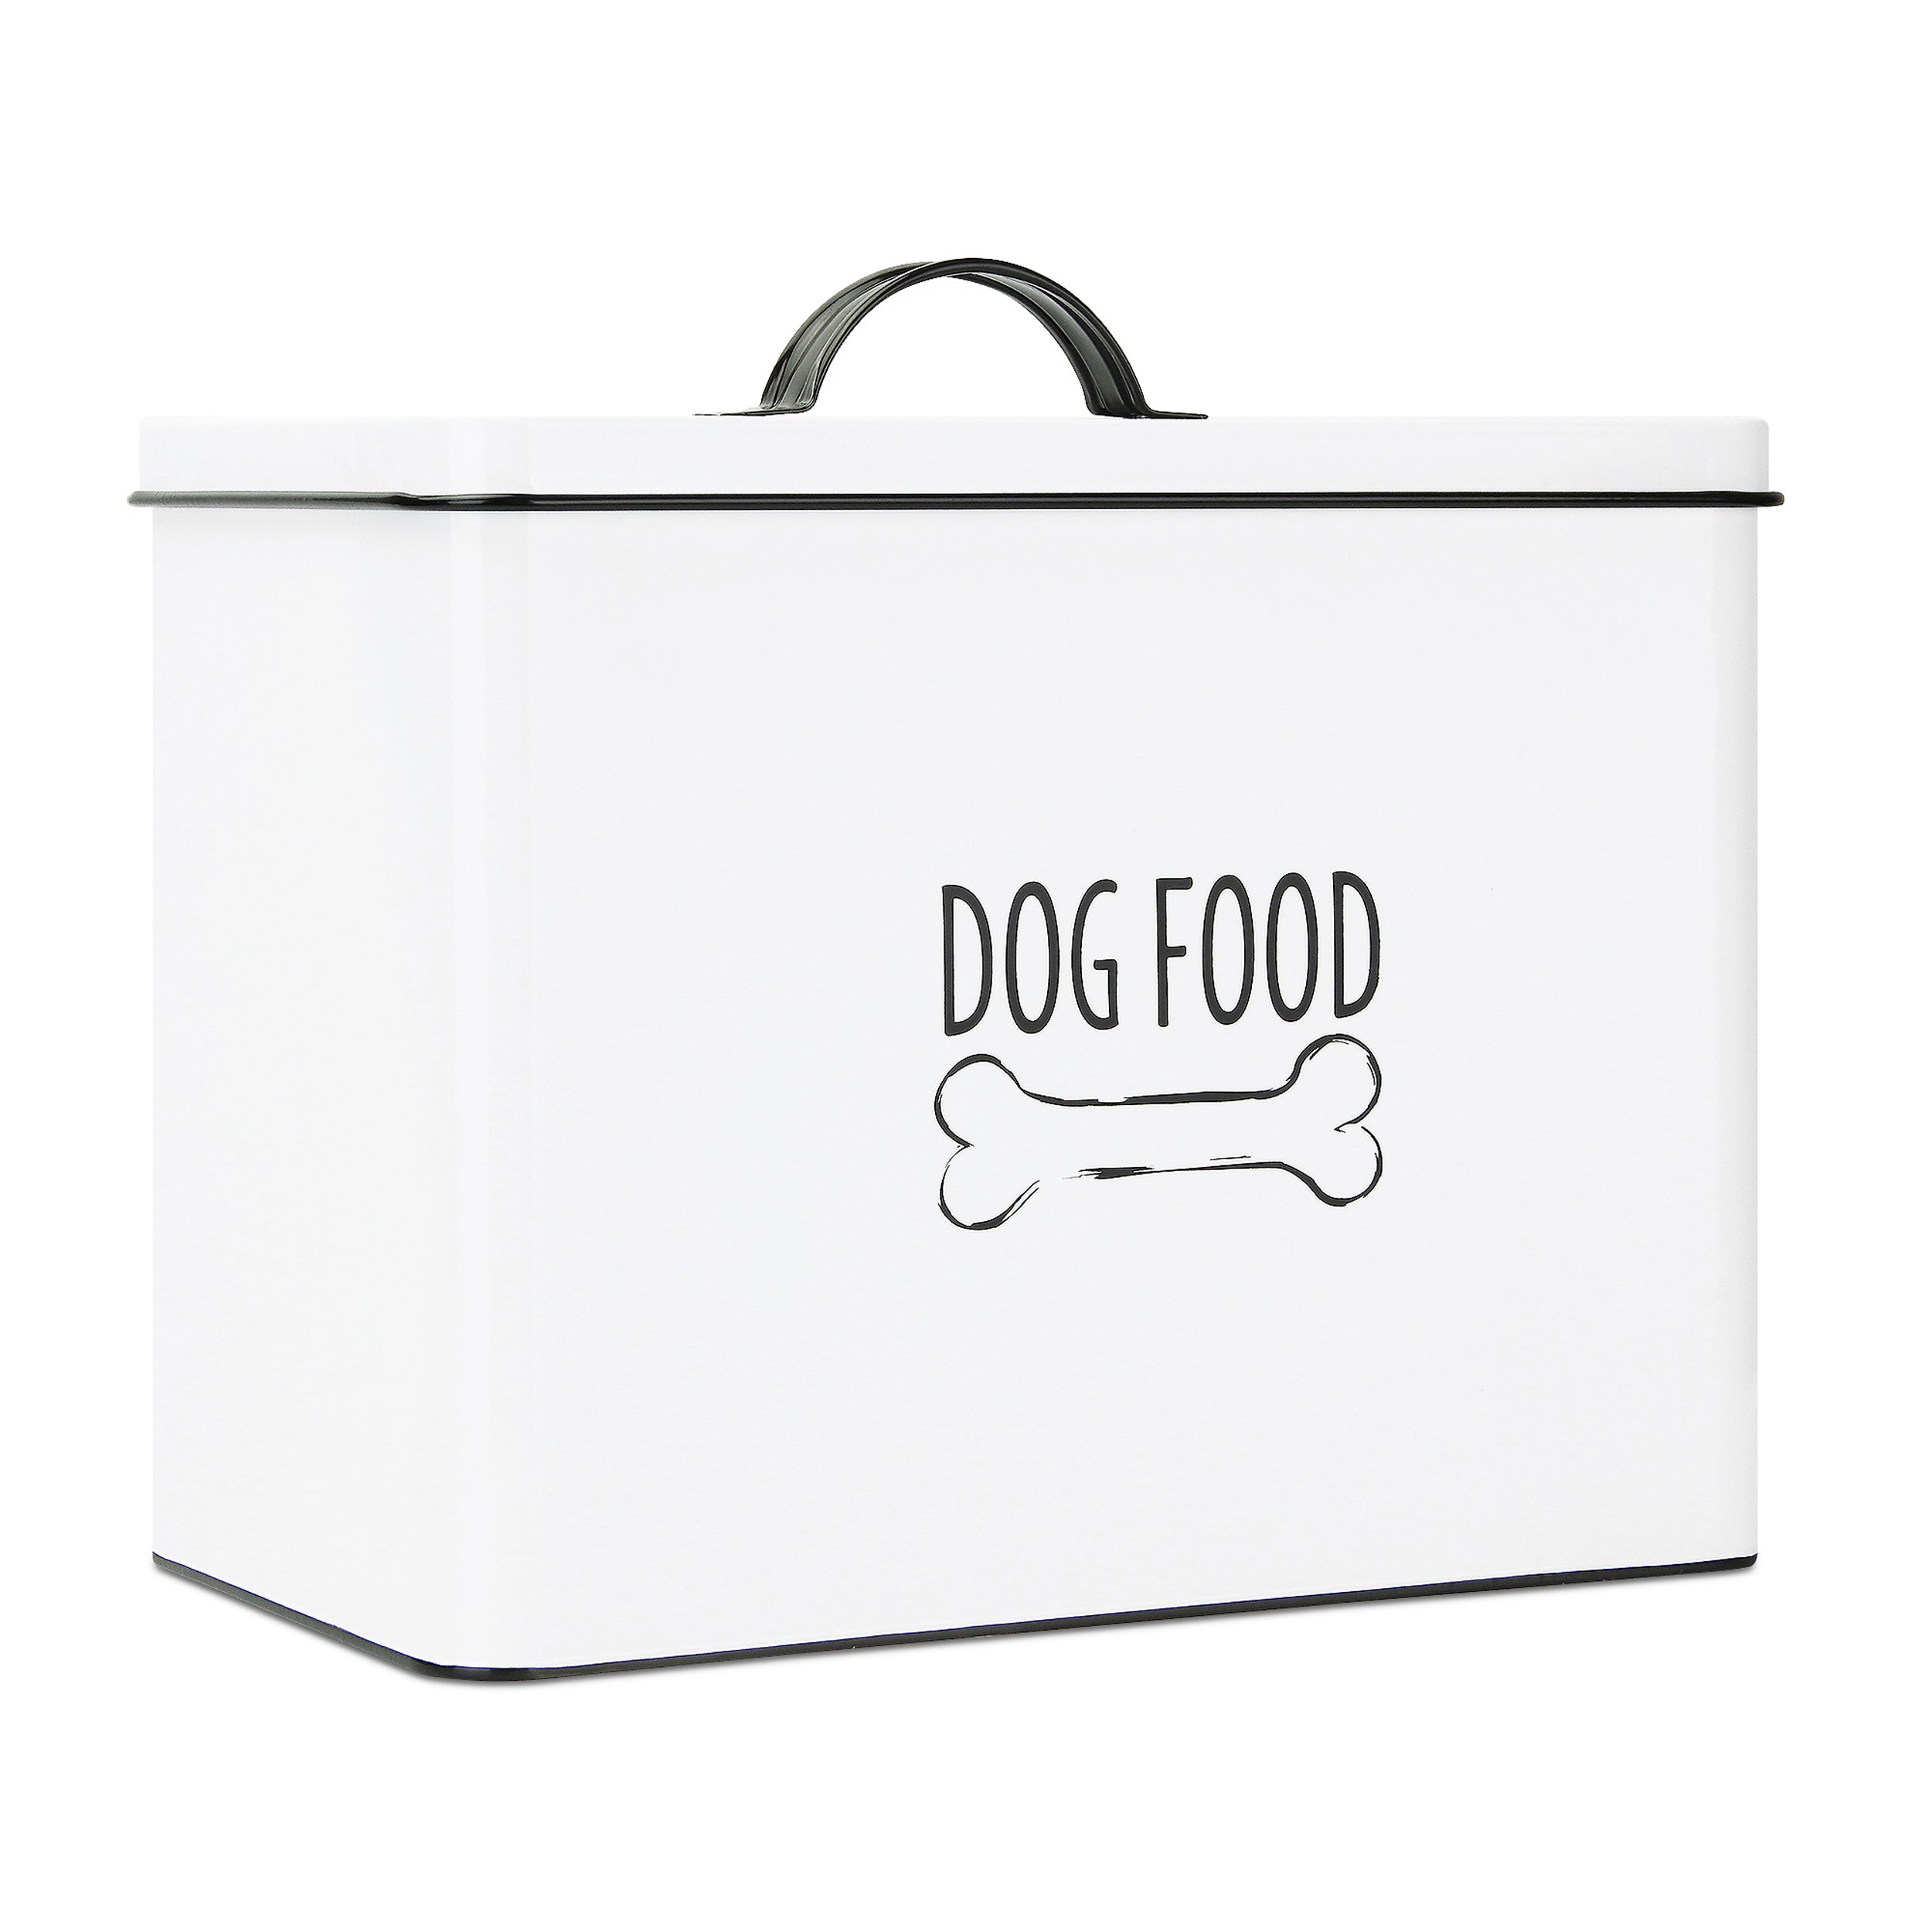 Rustic Dog Food Bin #farmhouse #dog #food #storage Dog food storage bin